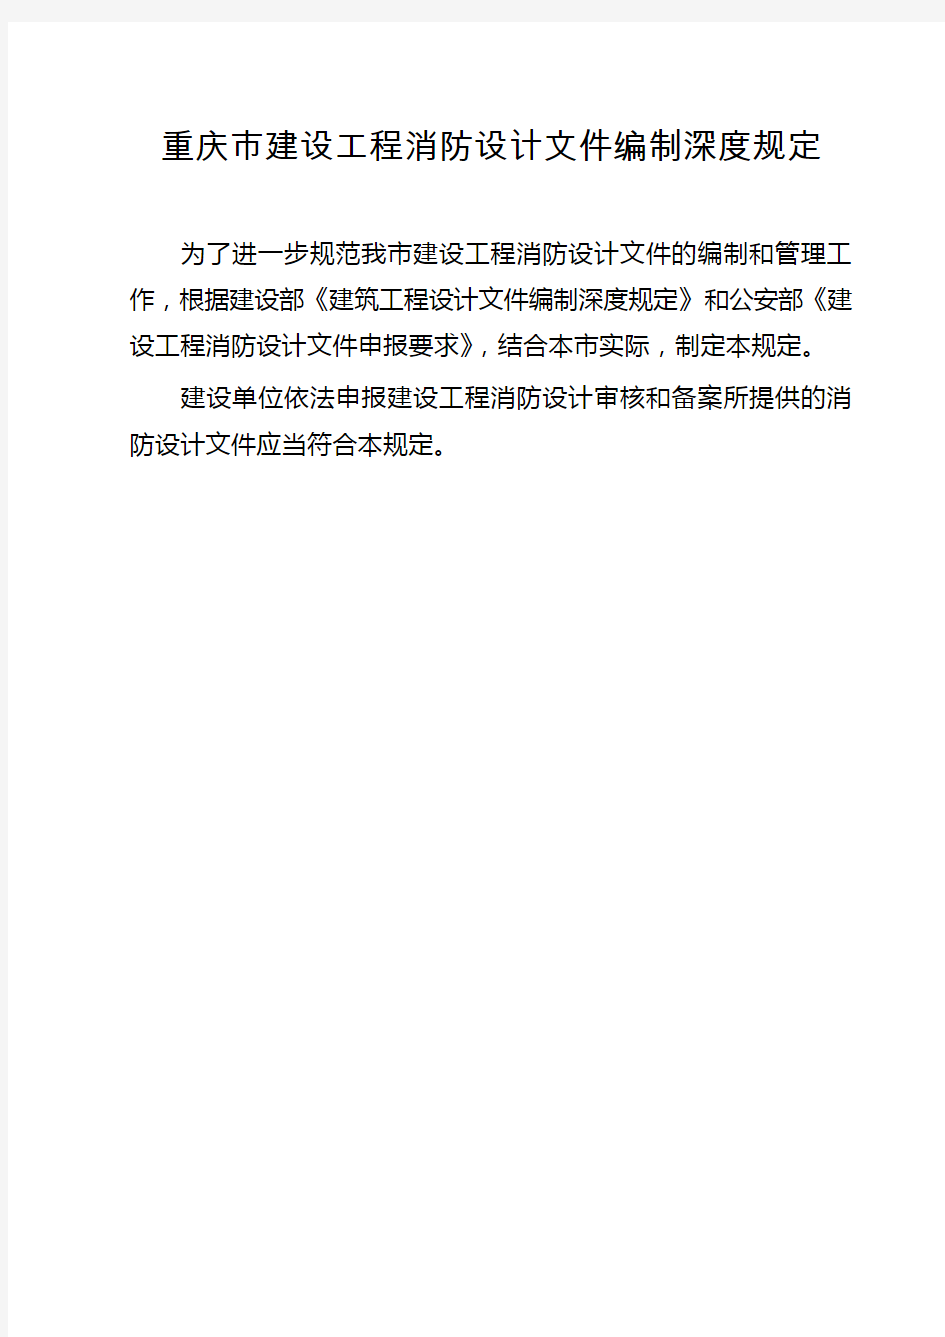 渝公发[2010]716号《重庆市建设工程消防设计文件编制深度规定》